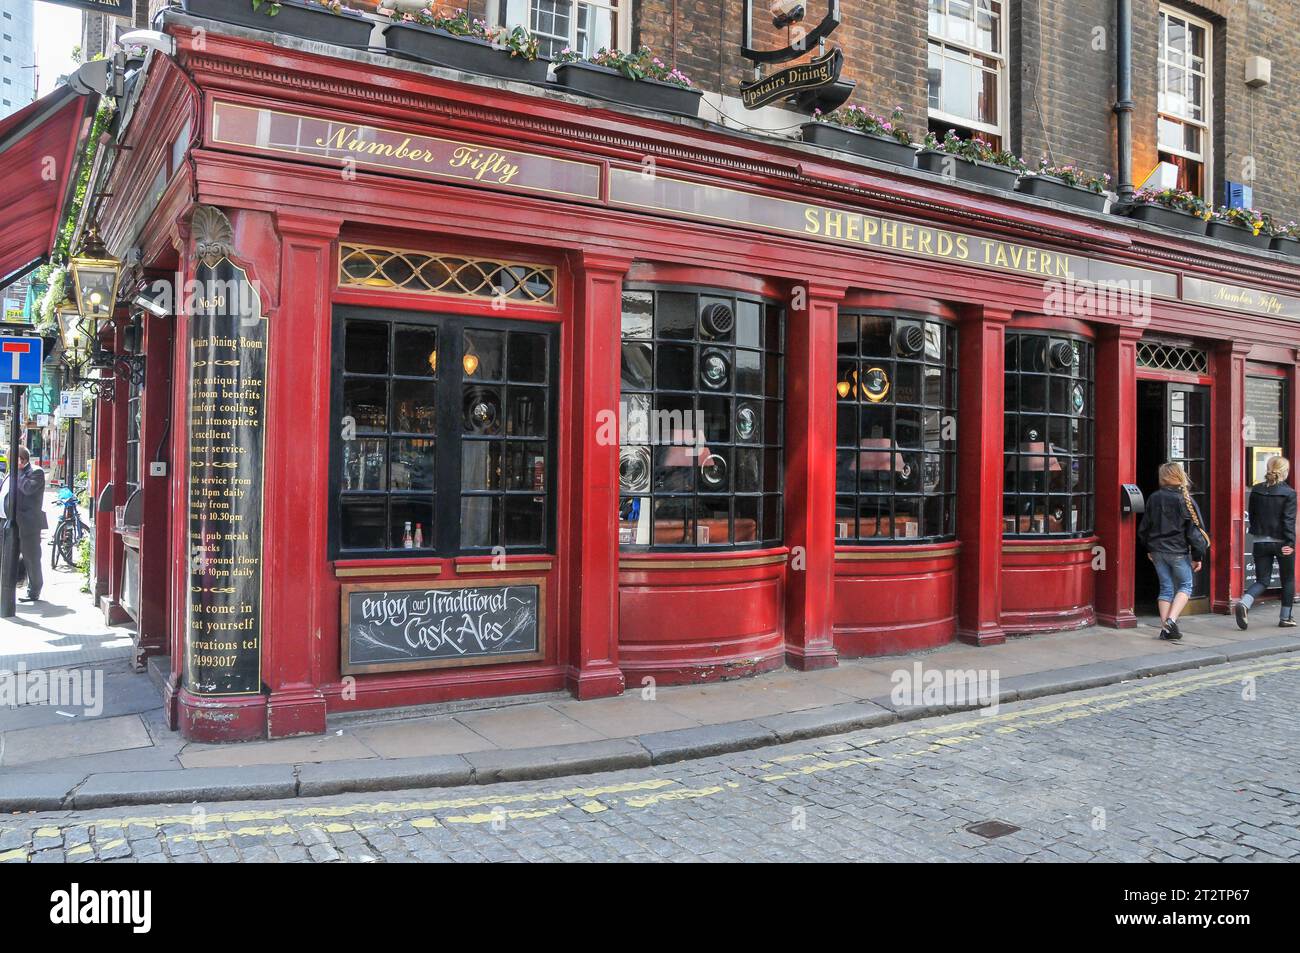 Londra, Regno Unito - 8 luglio 2008: Nel cuore del centro di Londra, nel Regno Unito, sorge un classico pub inglese con vivaci accenti di legno rosso e molti venti che si affacciano sulla strada Foto Stock